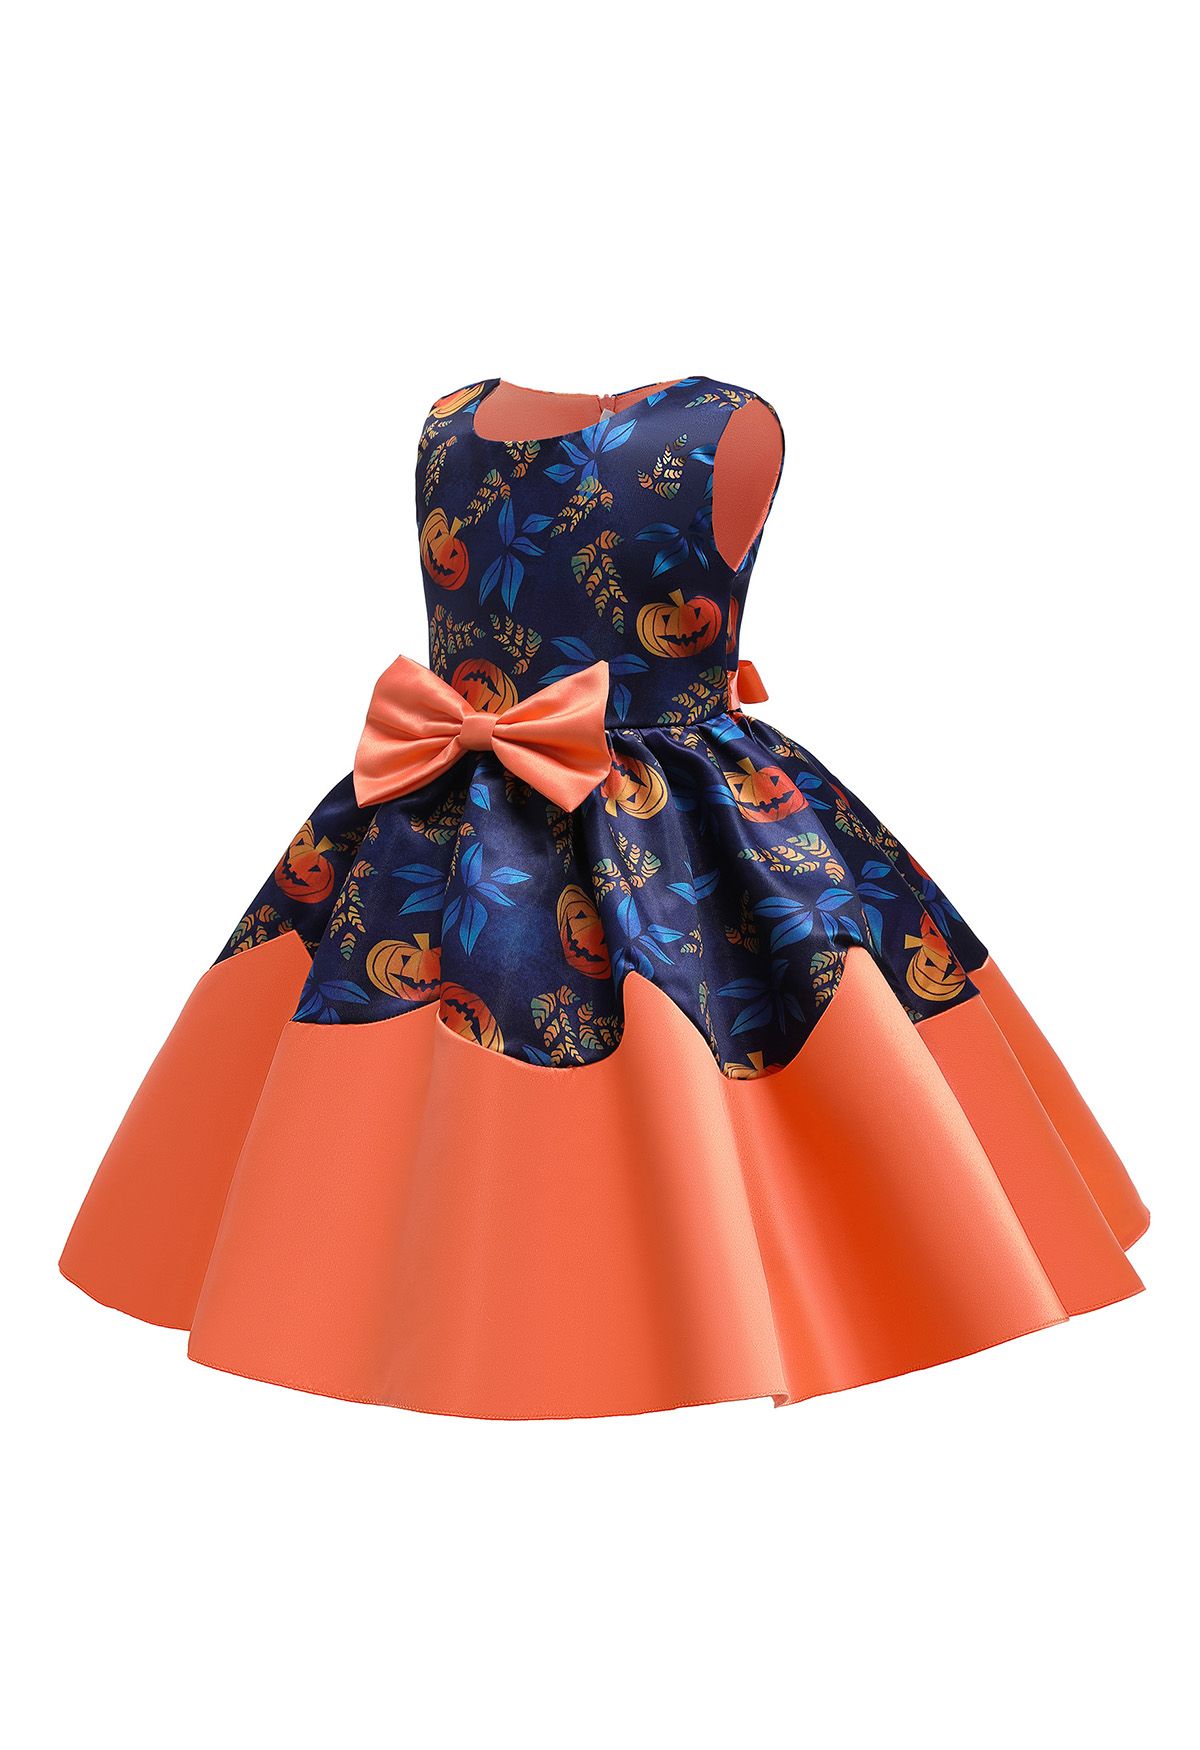 Kids' Pumpkin Lantern Bowknot Pleated Princess Dress